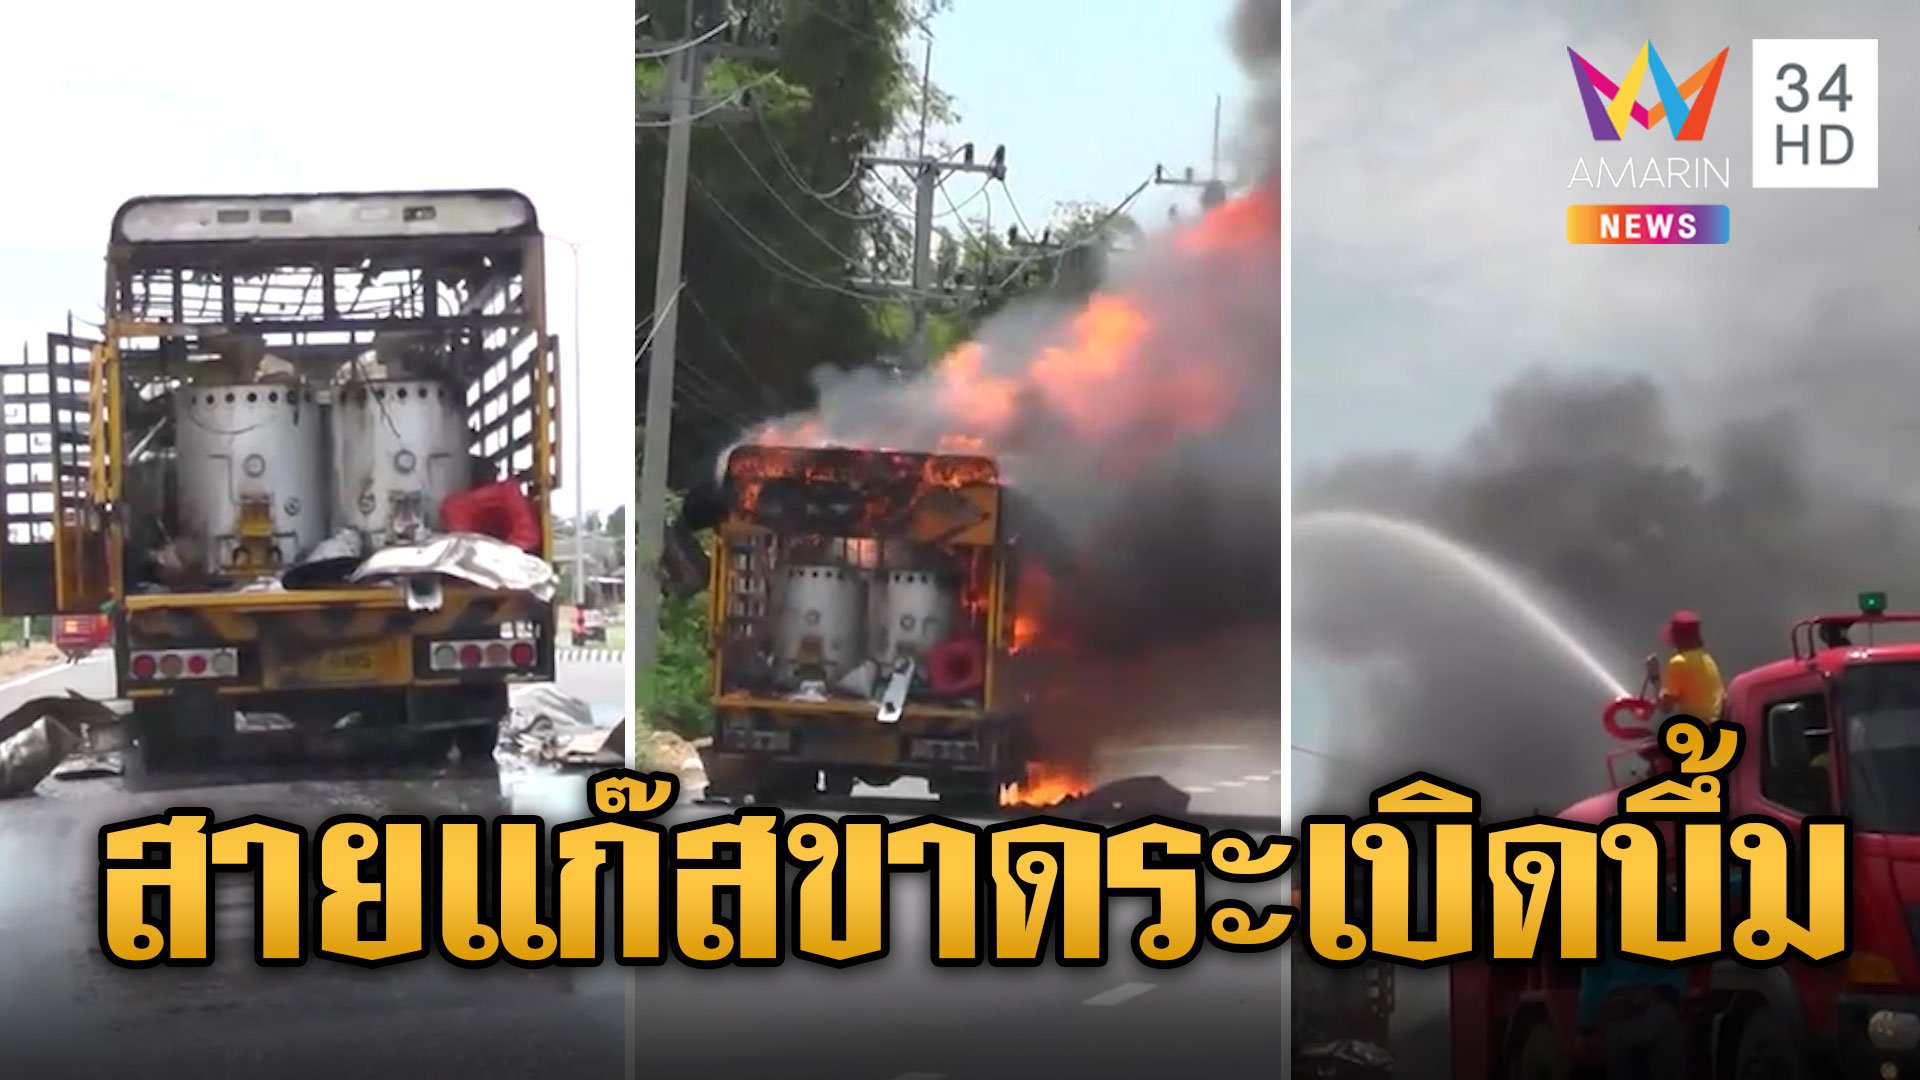 หนีตายระทึก! รถตีเส้นจราจรสายแก๊สขาดระเบิดบึ้ม | ข่าวอรุณอมรินทร์ | 21 พ.ค. 67 | AMARIN TVHD34